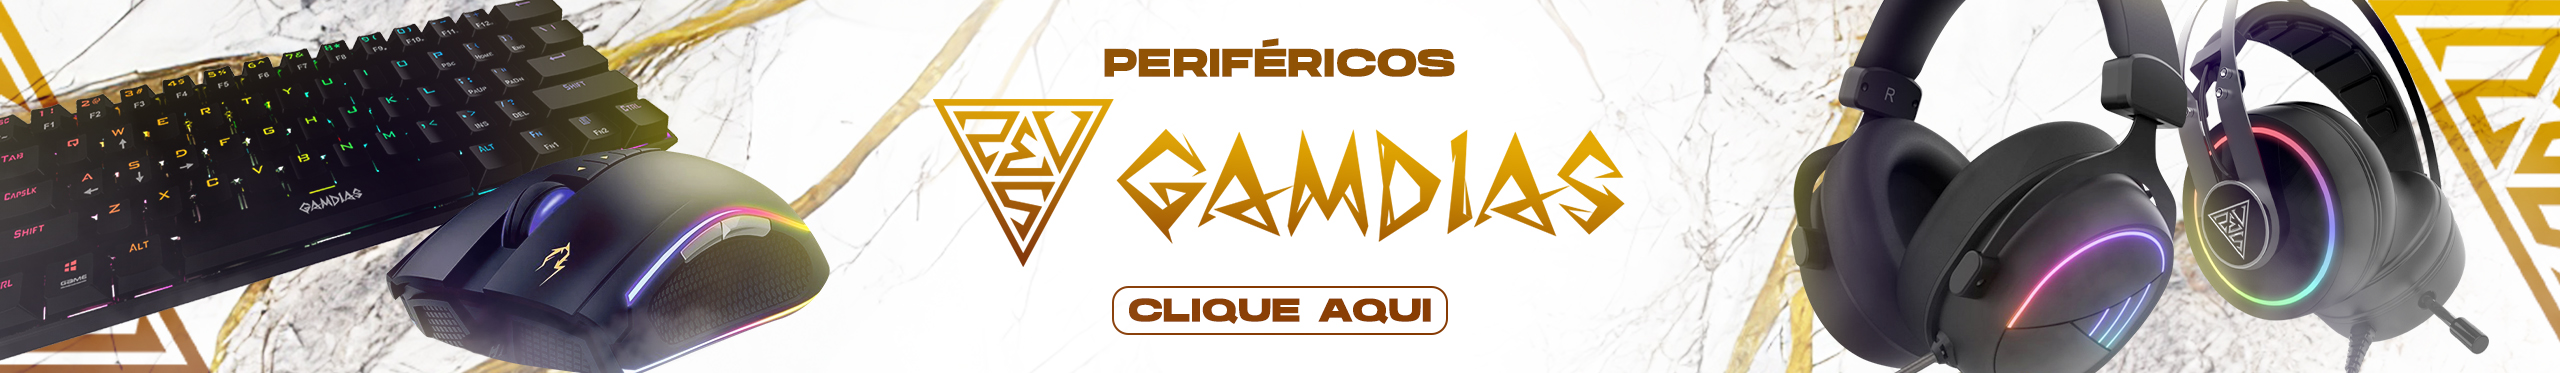 Periféricos Gamdias | Eleve o nível da sua gameplay. Confira!